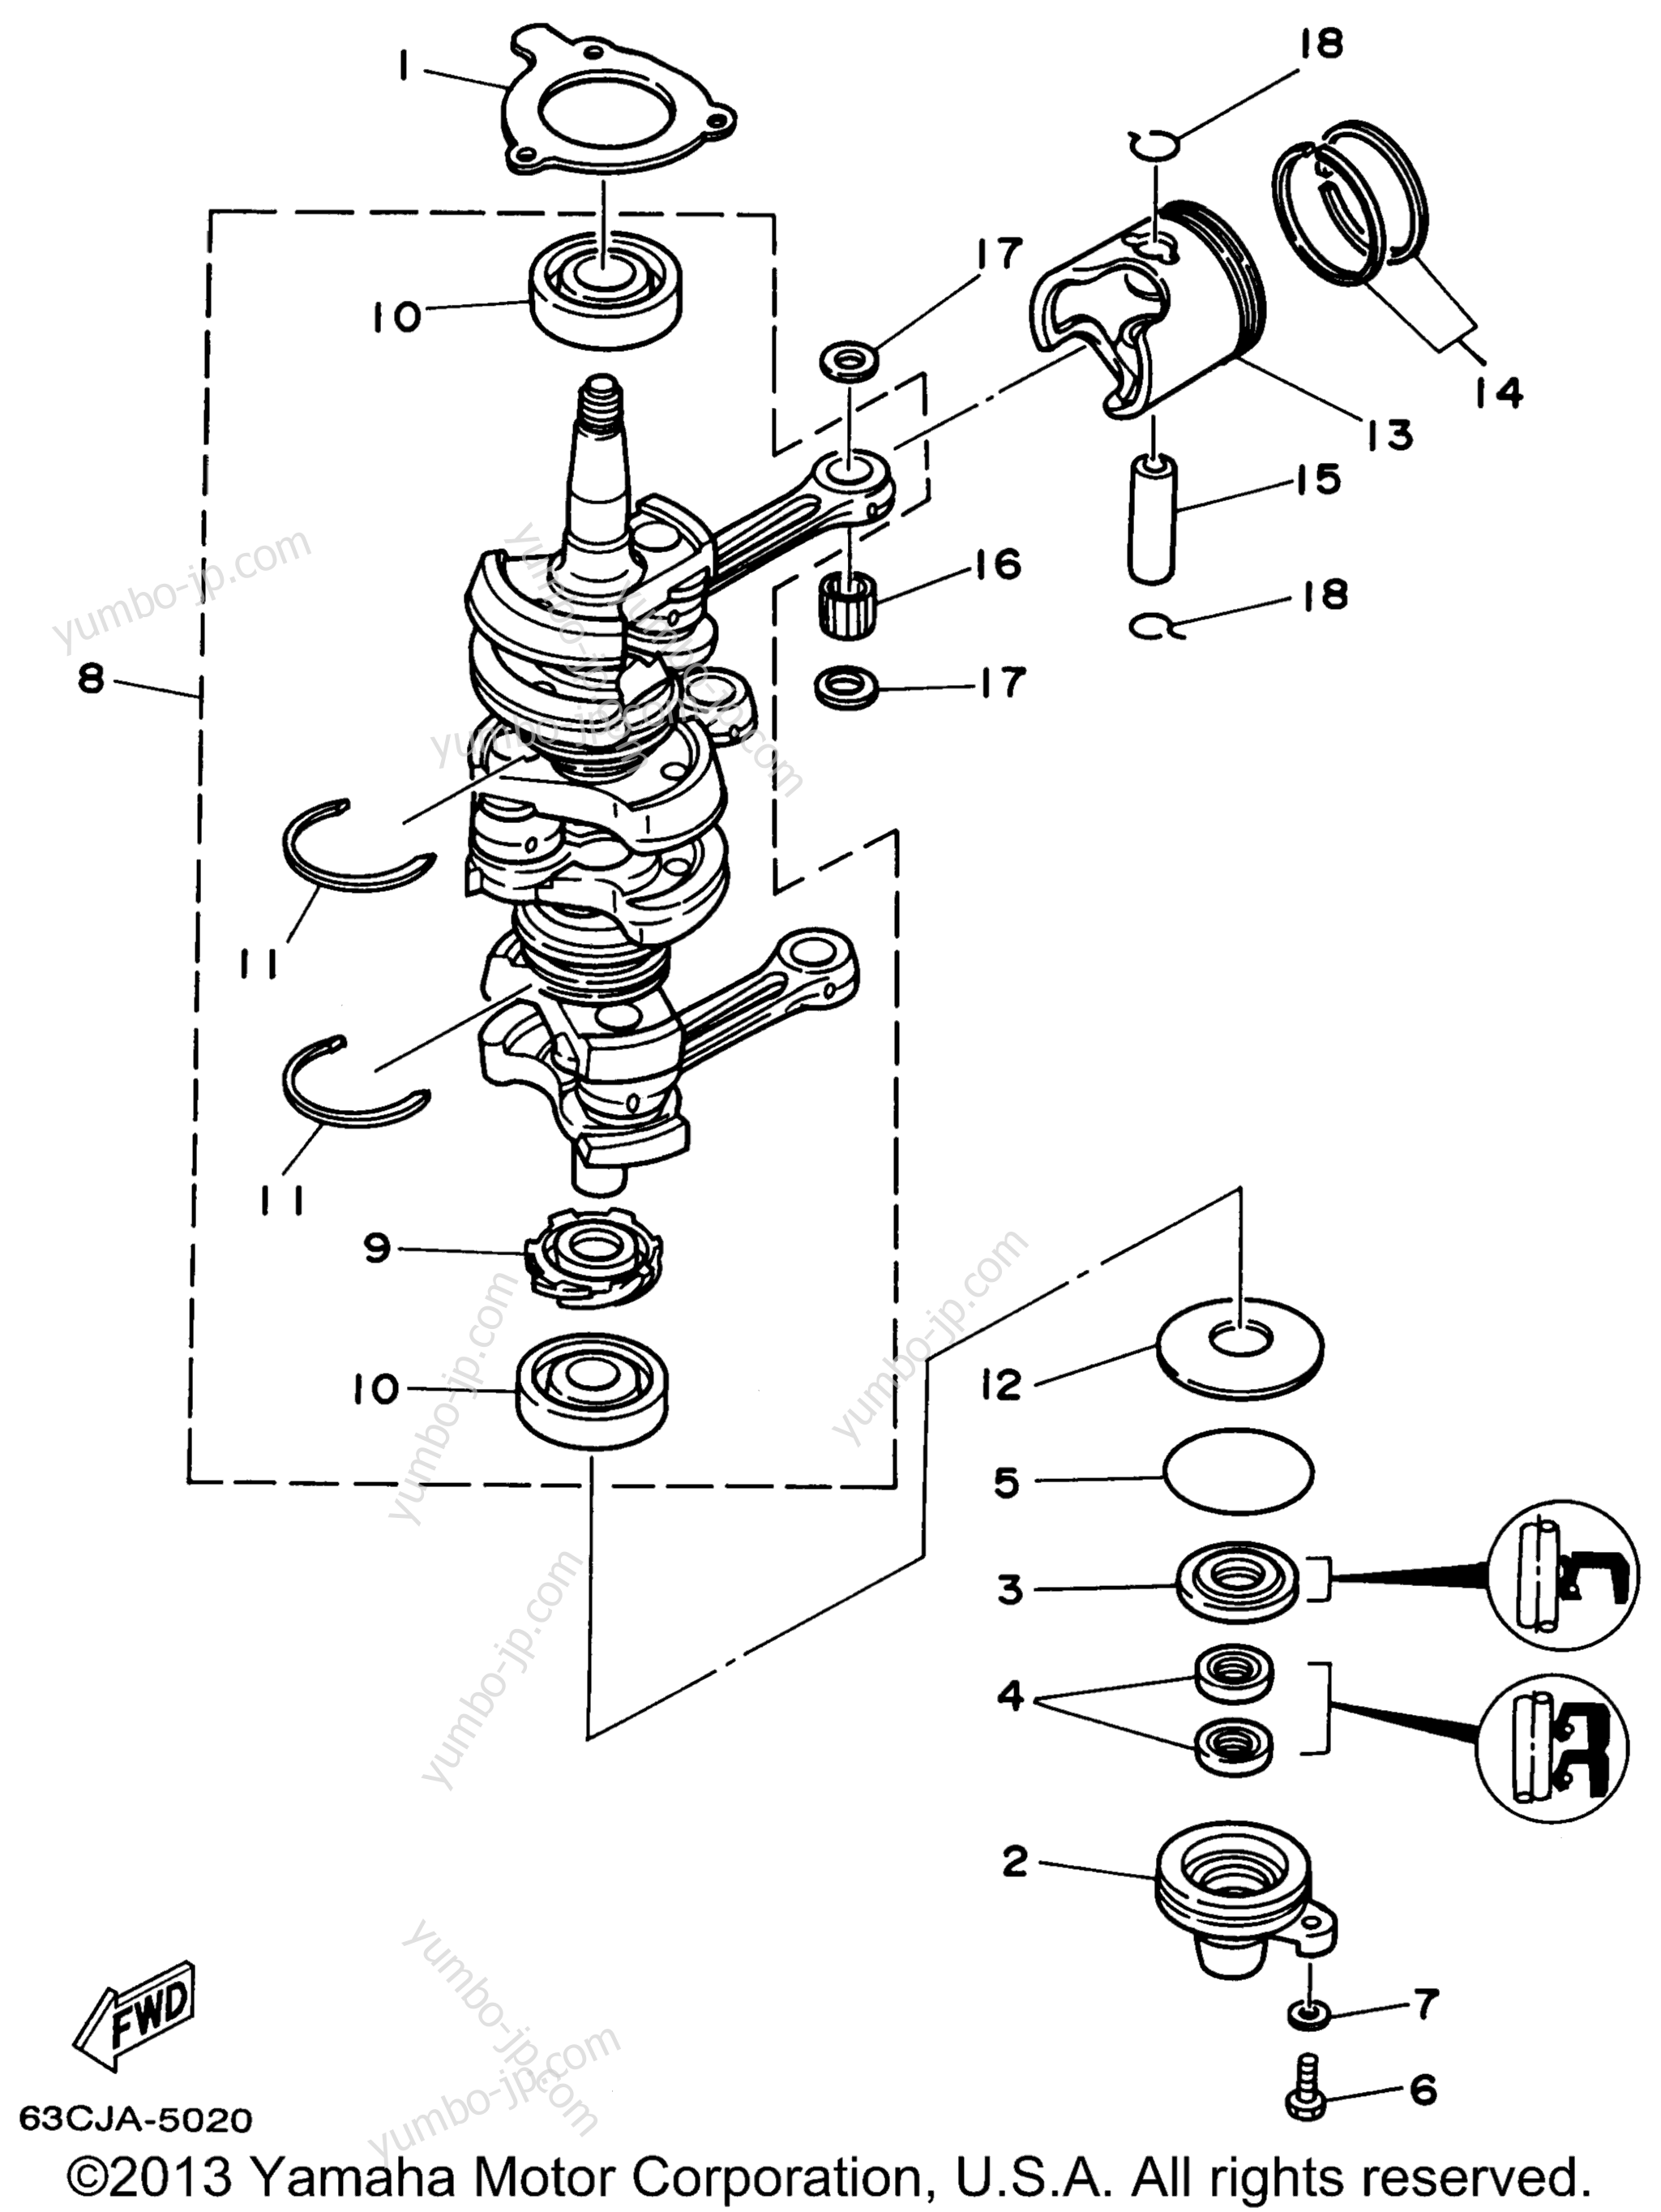 Коленвал и поршневая группа для лодочных моторов YAMAHA P40EJRW_THLW (50ELRW) 1998 г.